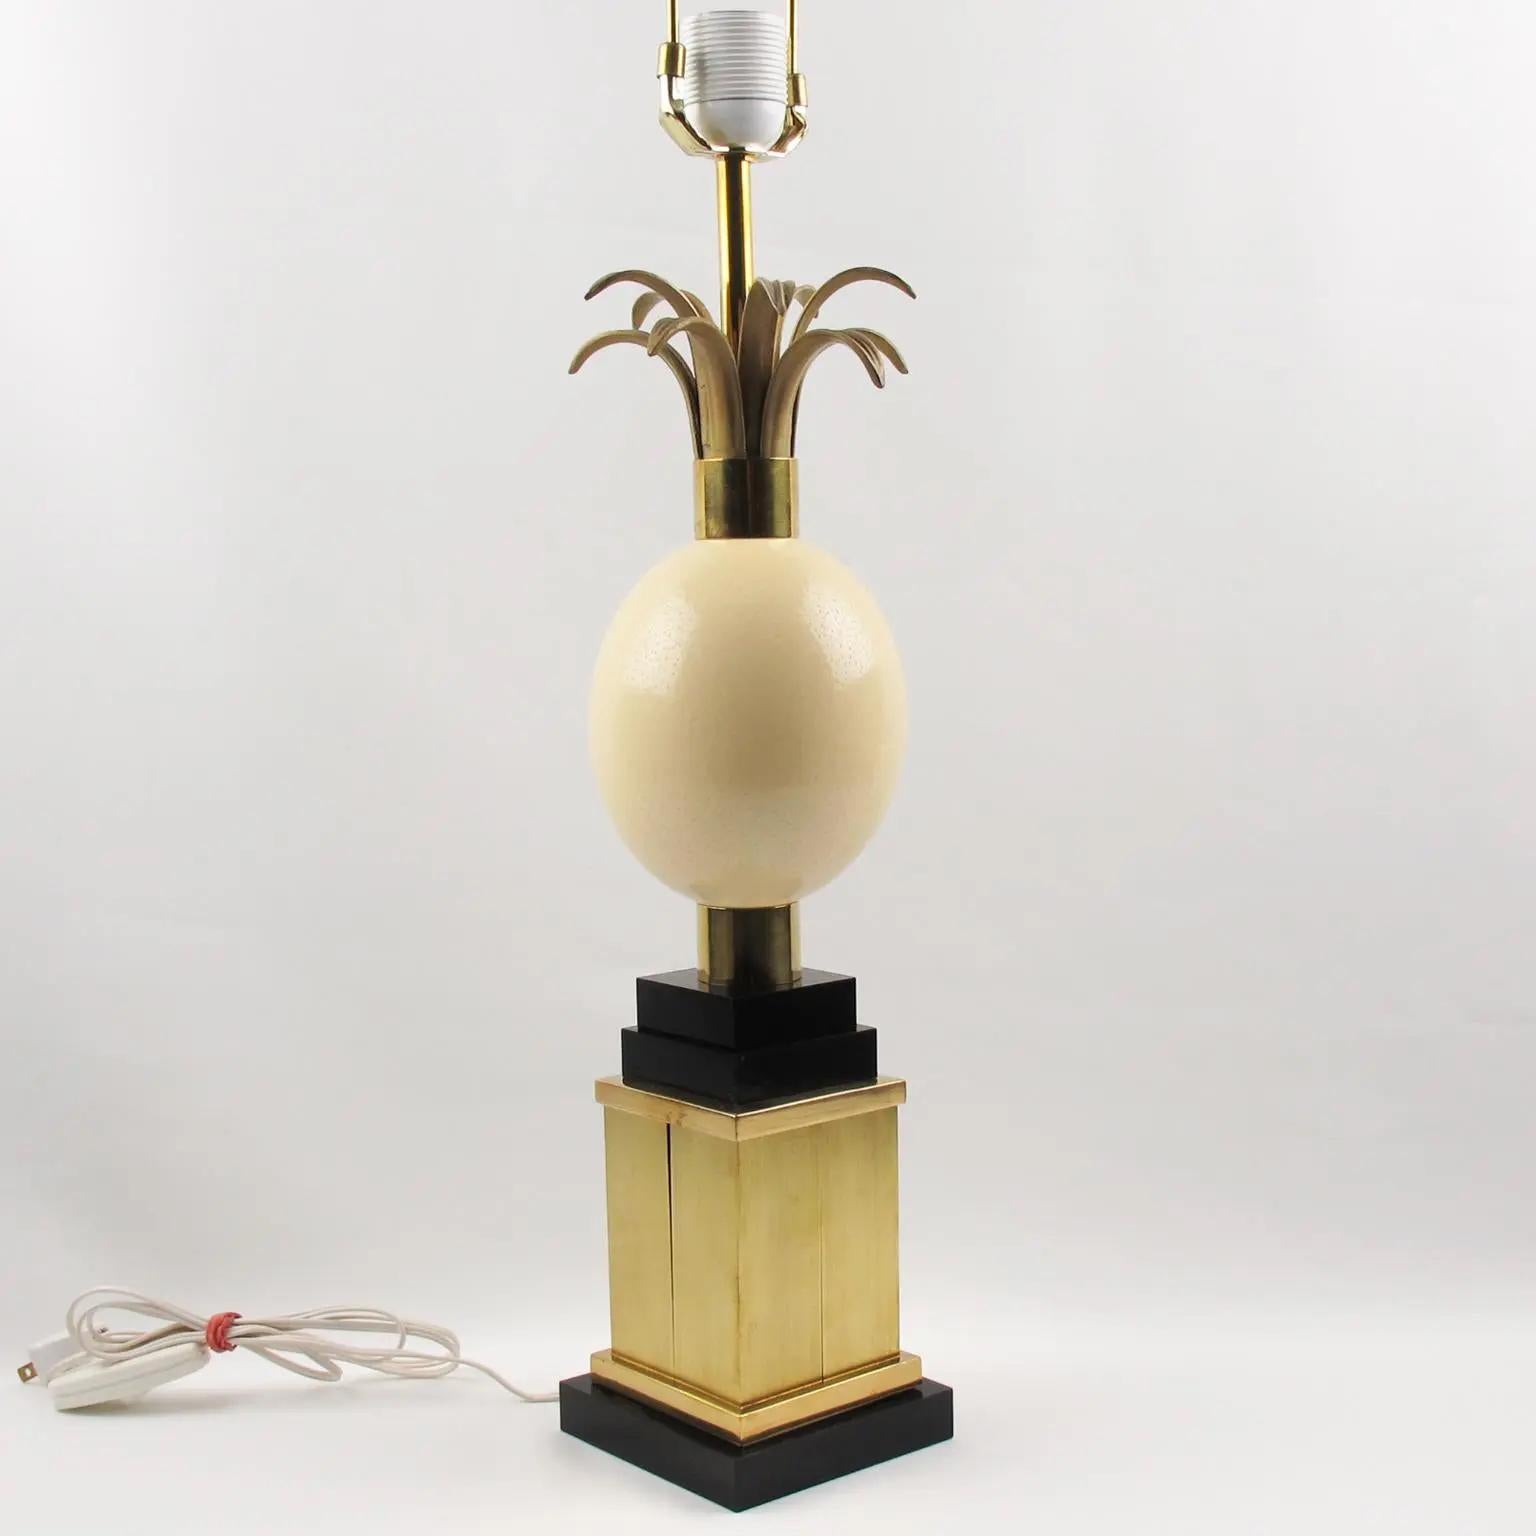 La Maison Charles et Fils, France, a conçu et fabriqué cette jolie lampe de table haute dans les années 1970. La pièce présente un œuf d'autruche massif surmonté de frondes en métal doré sur un socle en laiton doré et en Lucite noire. La lampe est